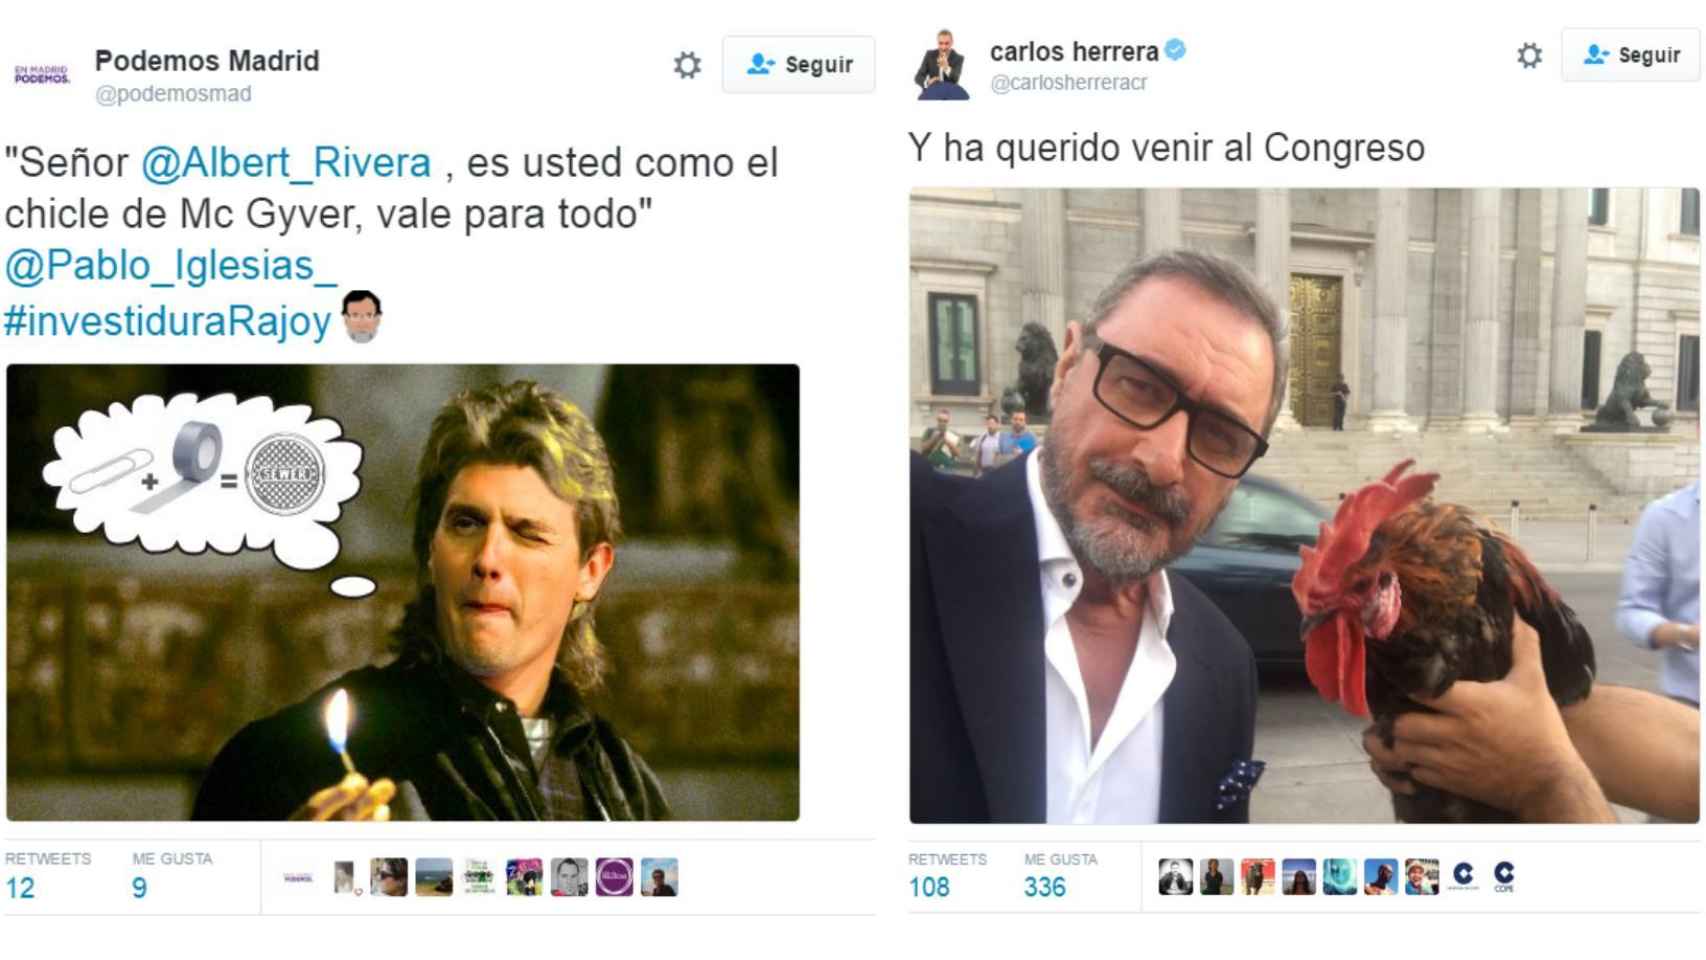 Un montaje de Podemos Madrid con MacGyver-Rivera y el selfie con gallo de Herrera